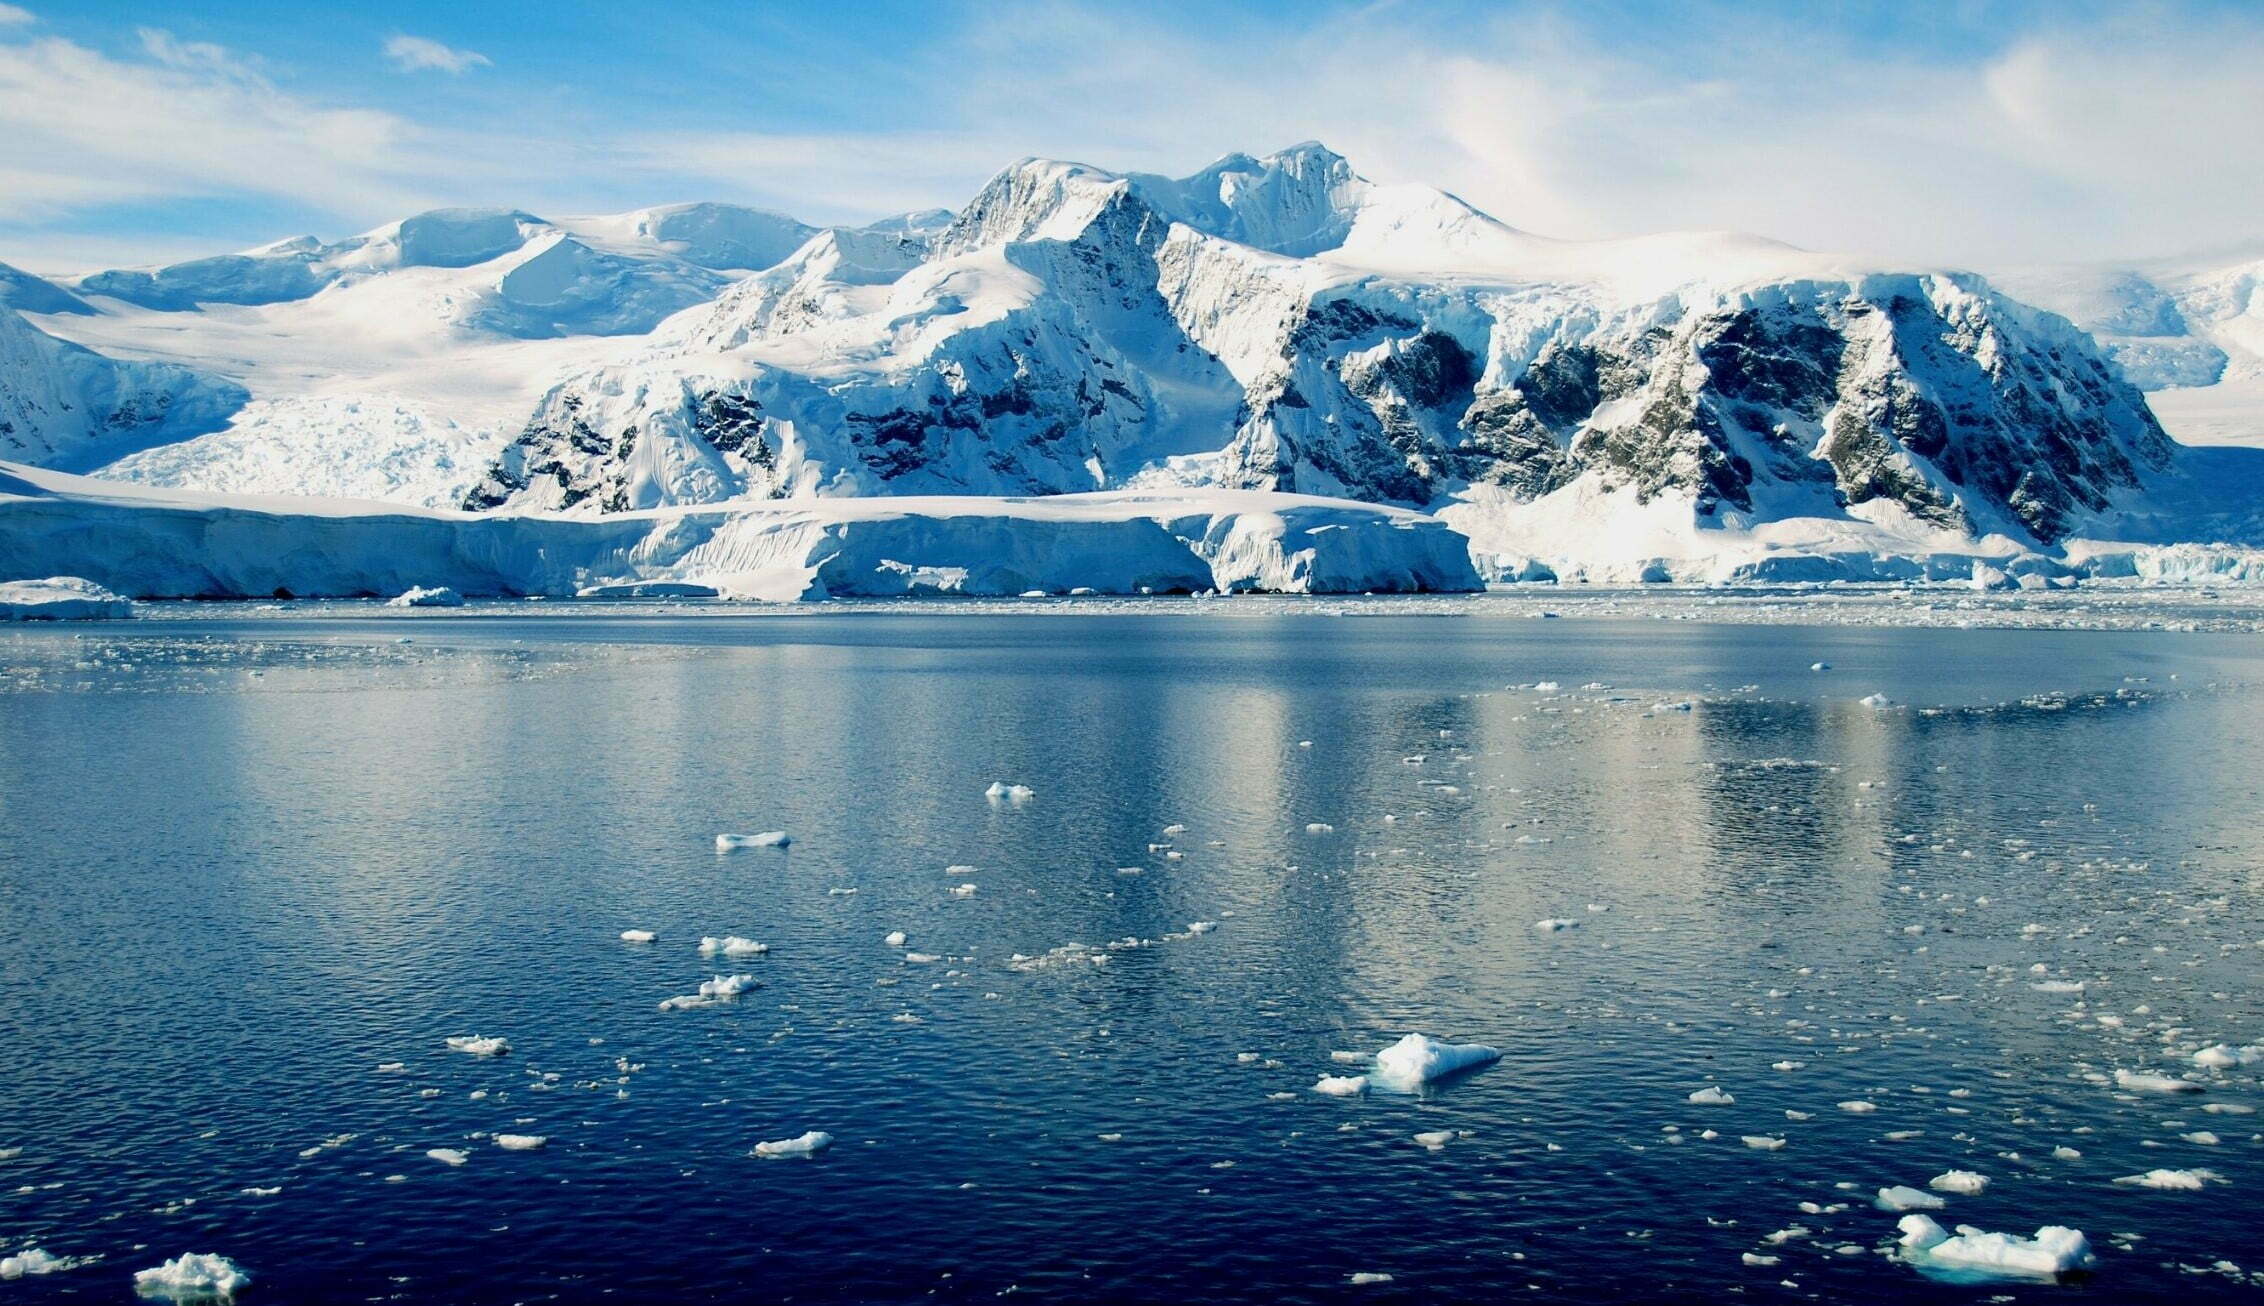 Antarctic scenery